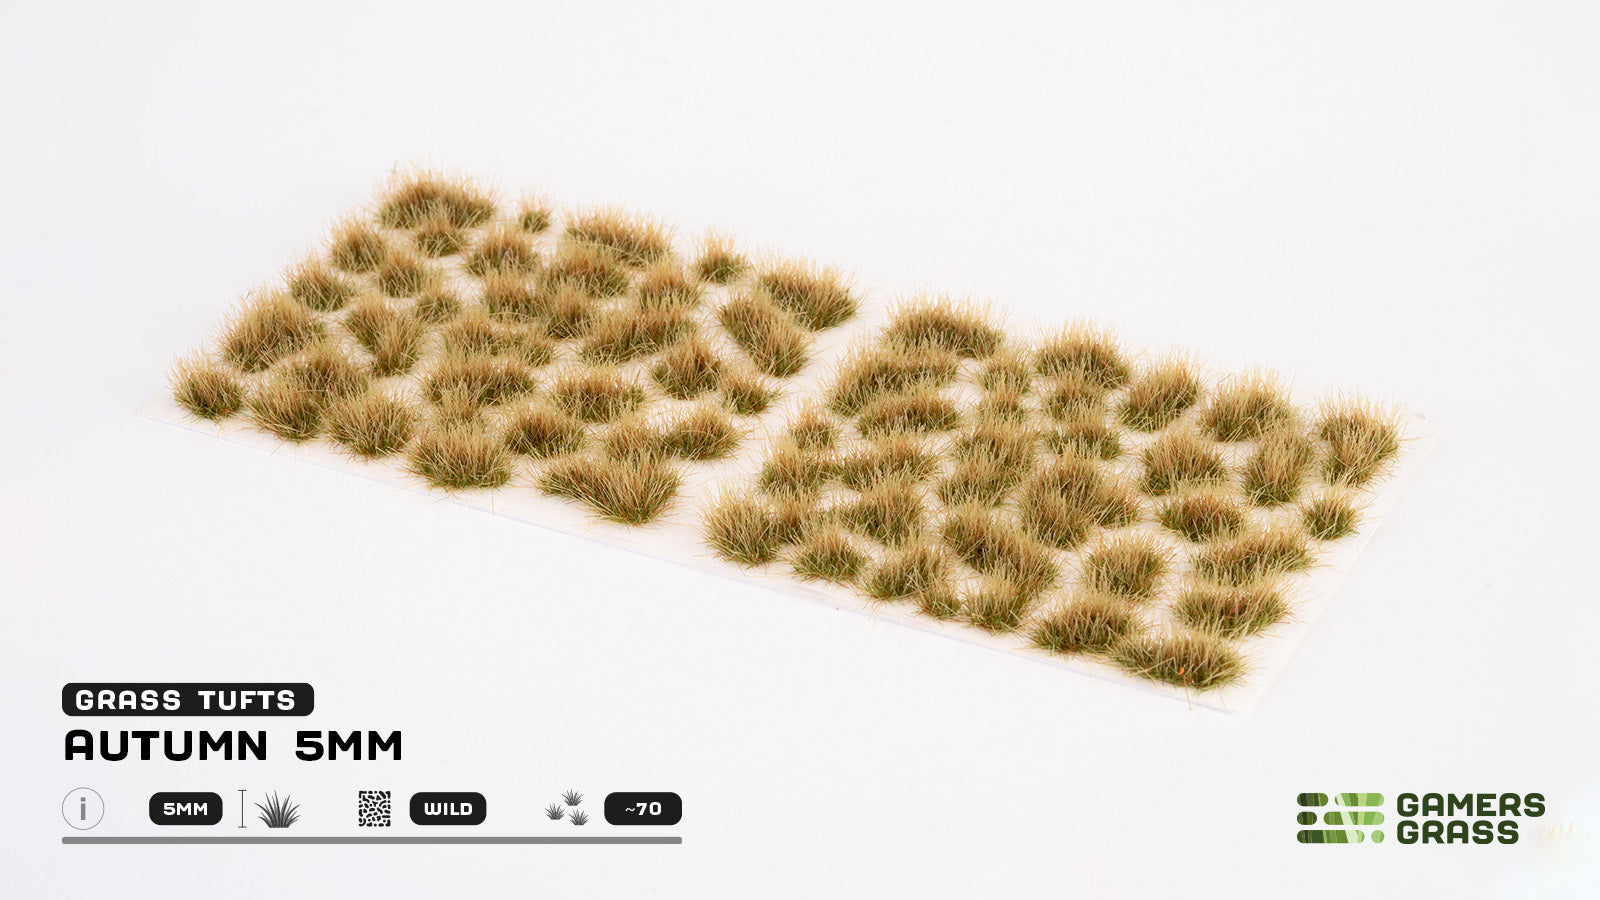 GamersGrass Grass Tufts: Autumn 5mm - Wild | Gauntlet Hobbies - Angola